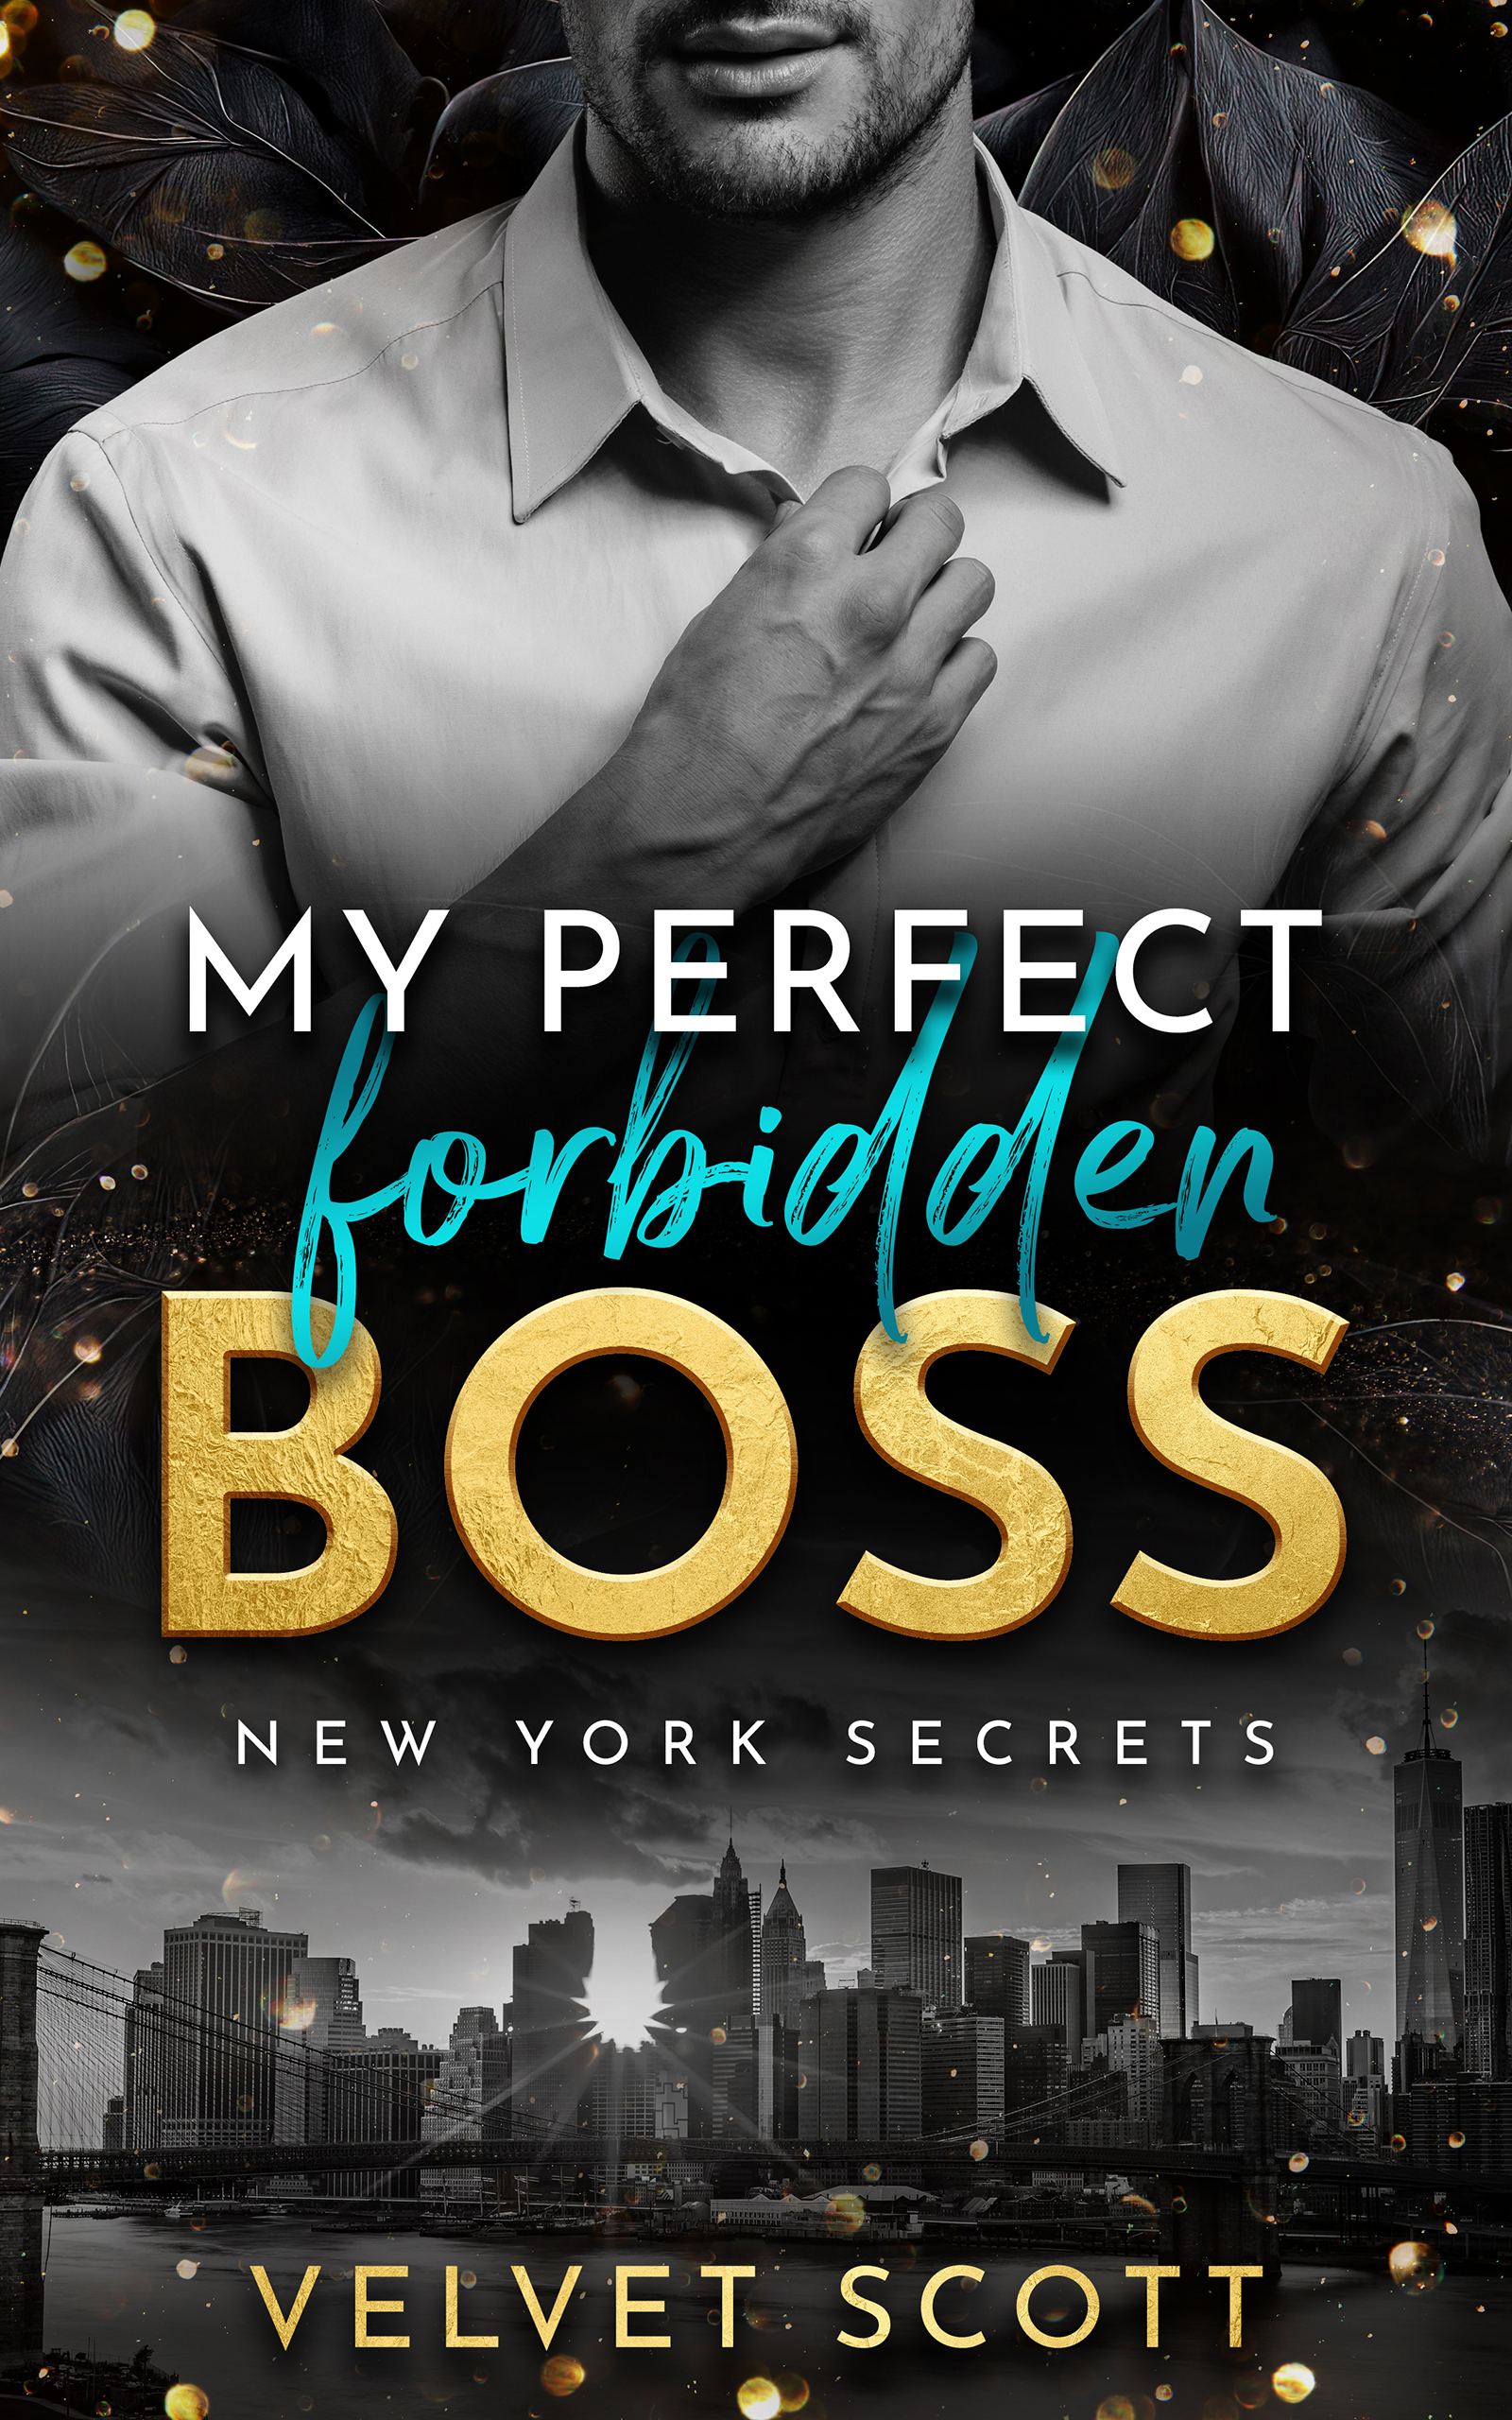 NEW YORK SECRETS: My perfect forbidden Boss